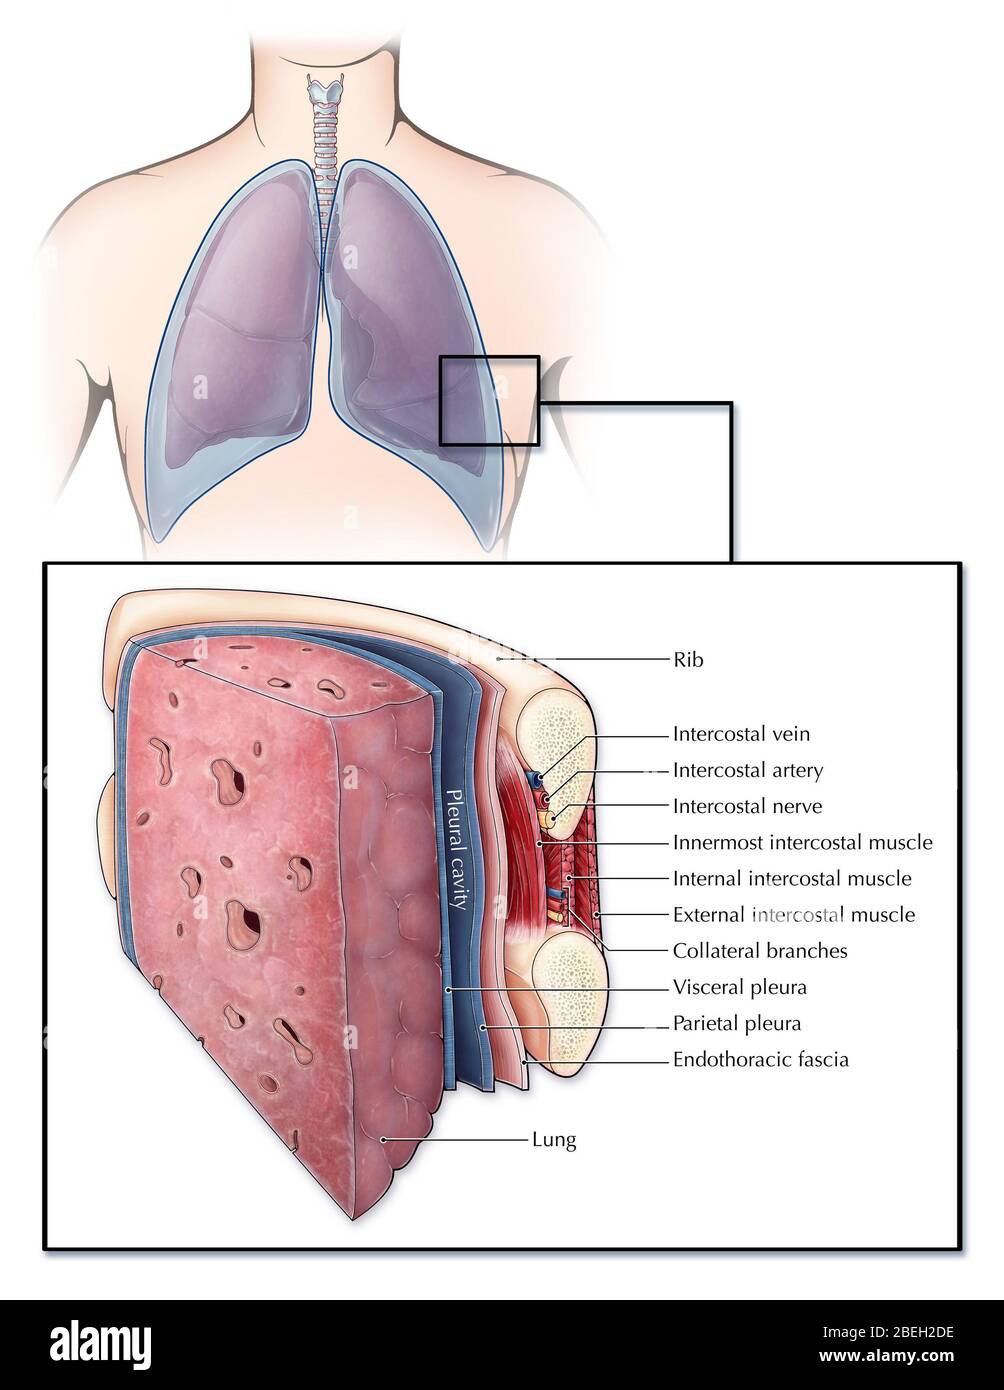 Una sezione illustrata di un polmone e della gabbia a coste che mostra diversi strati di tessuto e muscolo. La pleura (blu) è una membrana sierosa che copre i polmoni (pleura viscerale) e la parete toracica (pleura parietale), creando uno spazio riempito di fluido (cavità pleurica) che lubrifica i polmoni per aiutare a respirare. Tra ogni costola si trovano una serie di muscoli intercostali, arterie, vene e nervi. Uno strato di fascia endotoracica allinea anche la superficie interna della gabbia a coste. Foto Stock